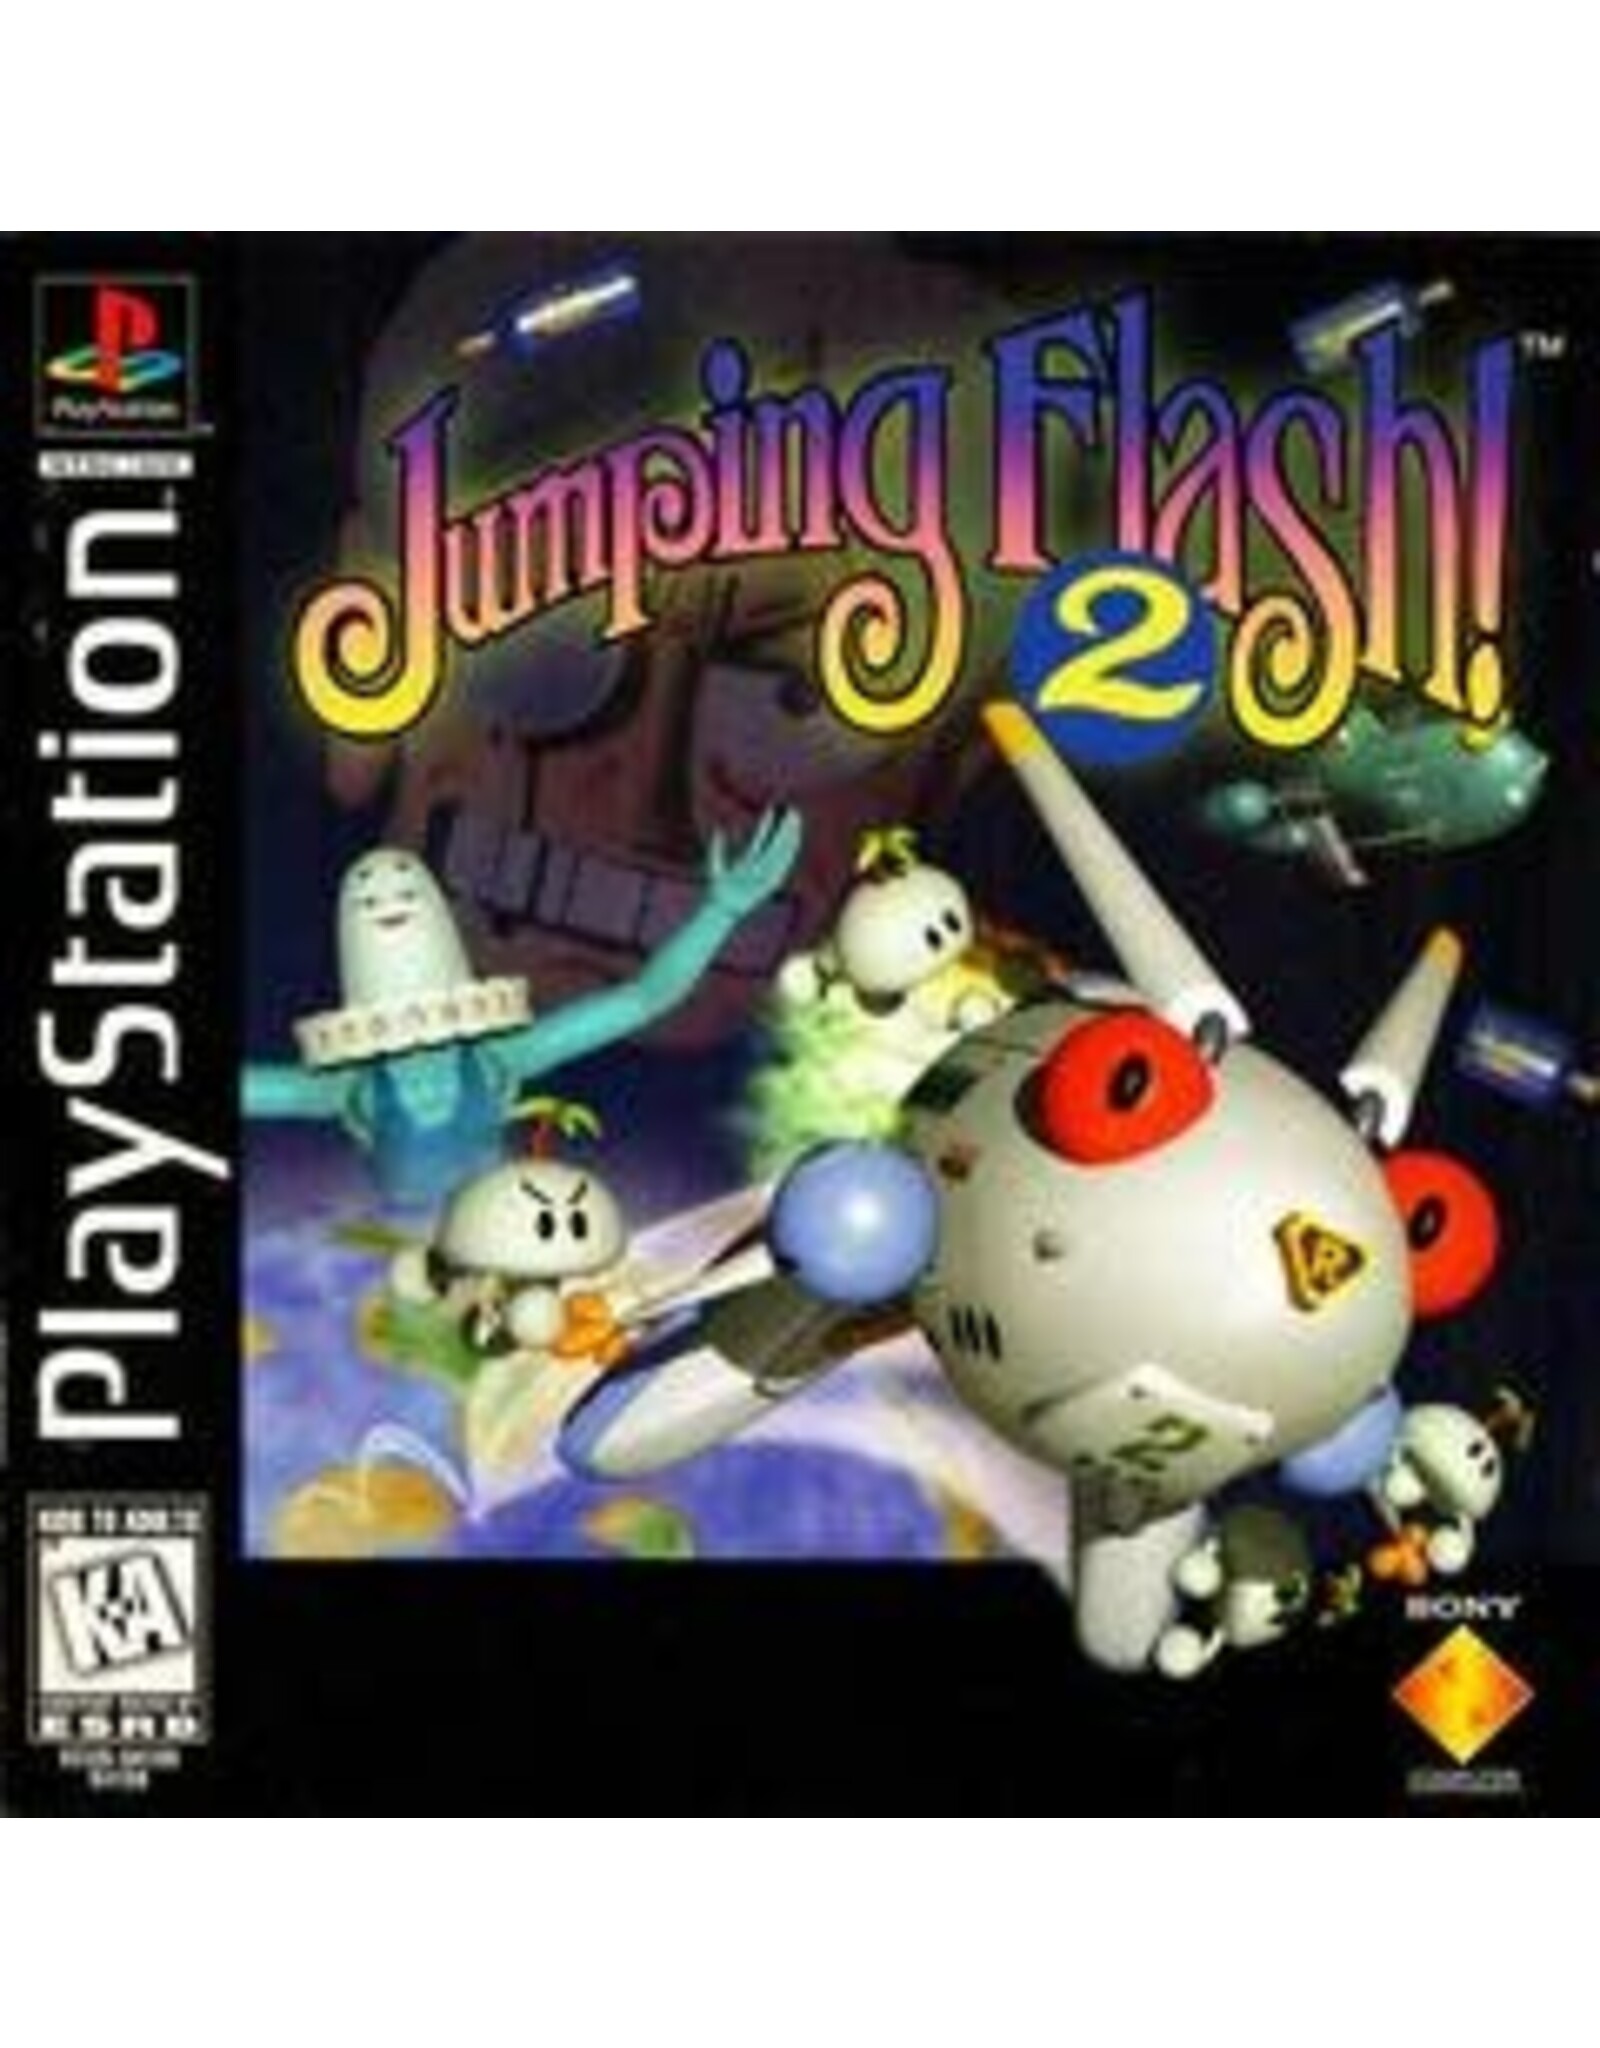 Playstation Jumping Flash 2 (No Manual)